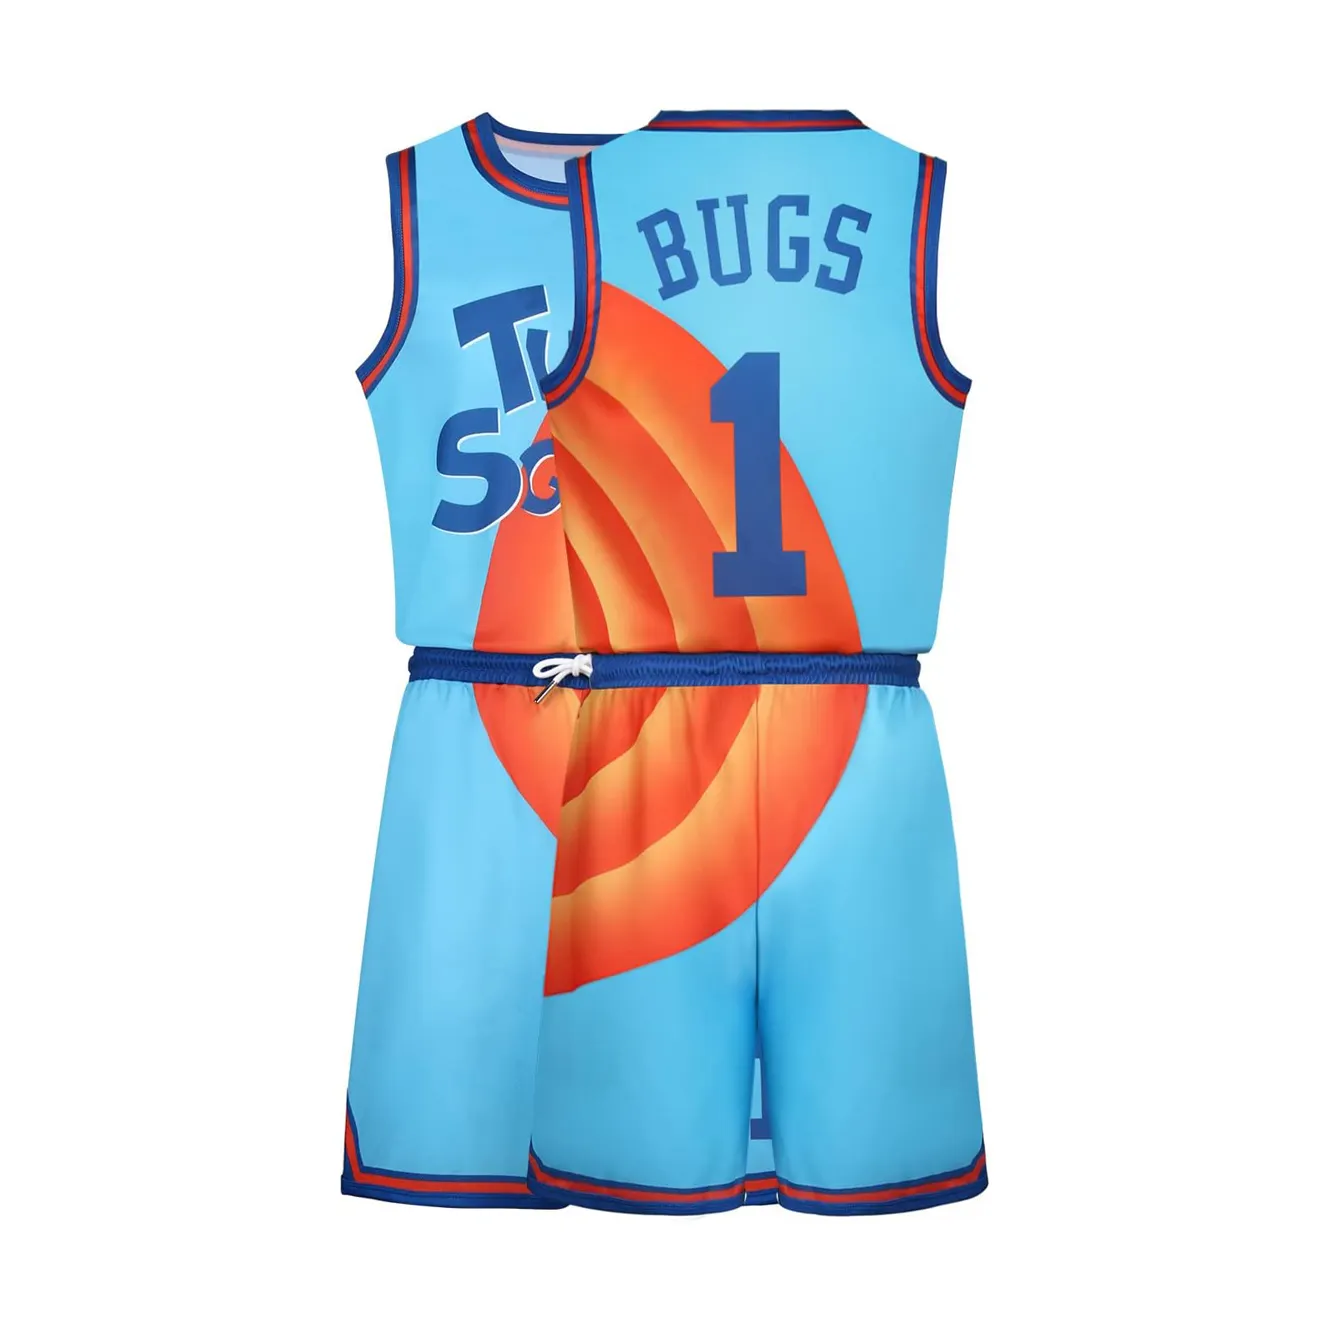 Özel basketbol üniforması yapma Video çocuklar için en kaliteli basketbol forması serin basketbol forması tasarımları